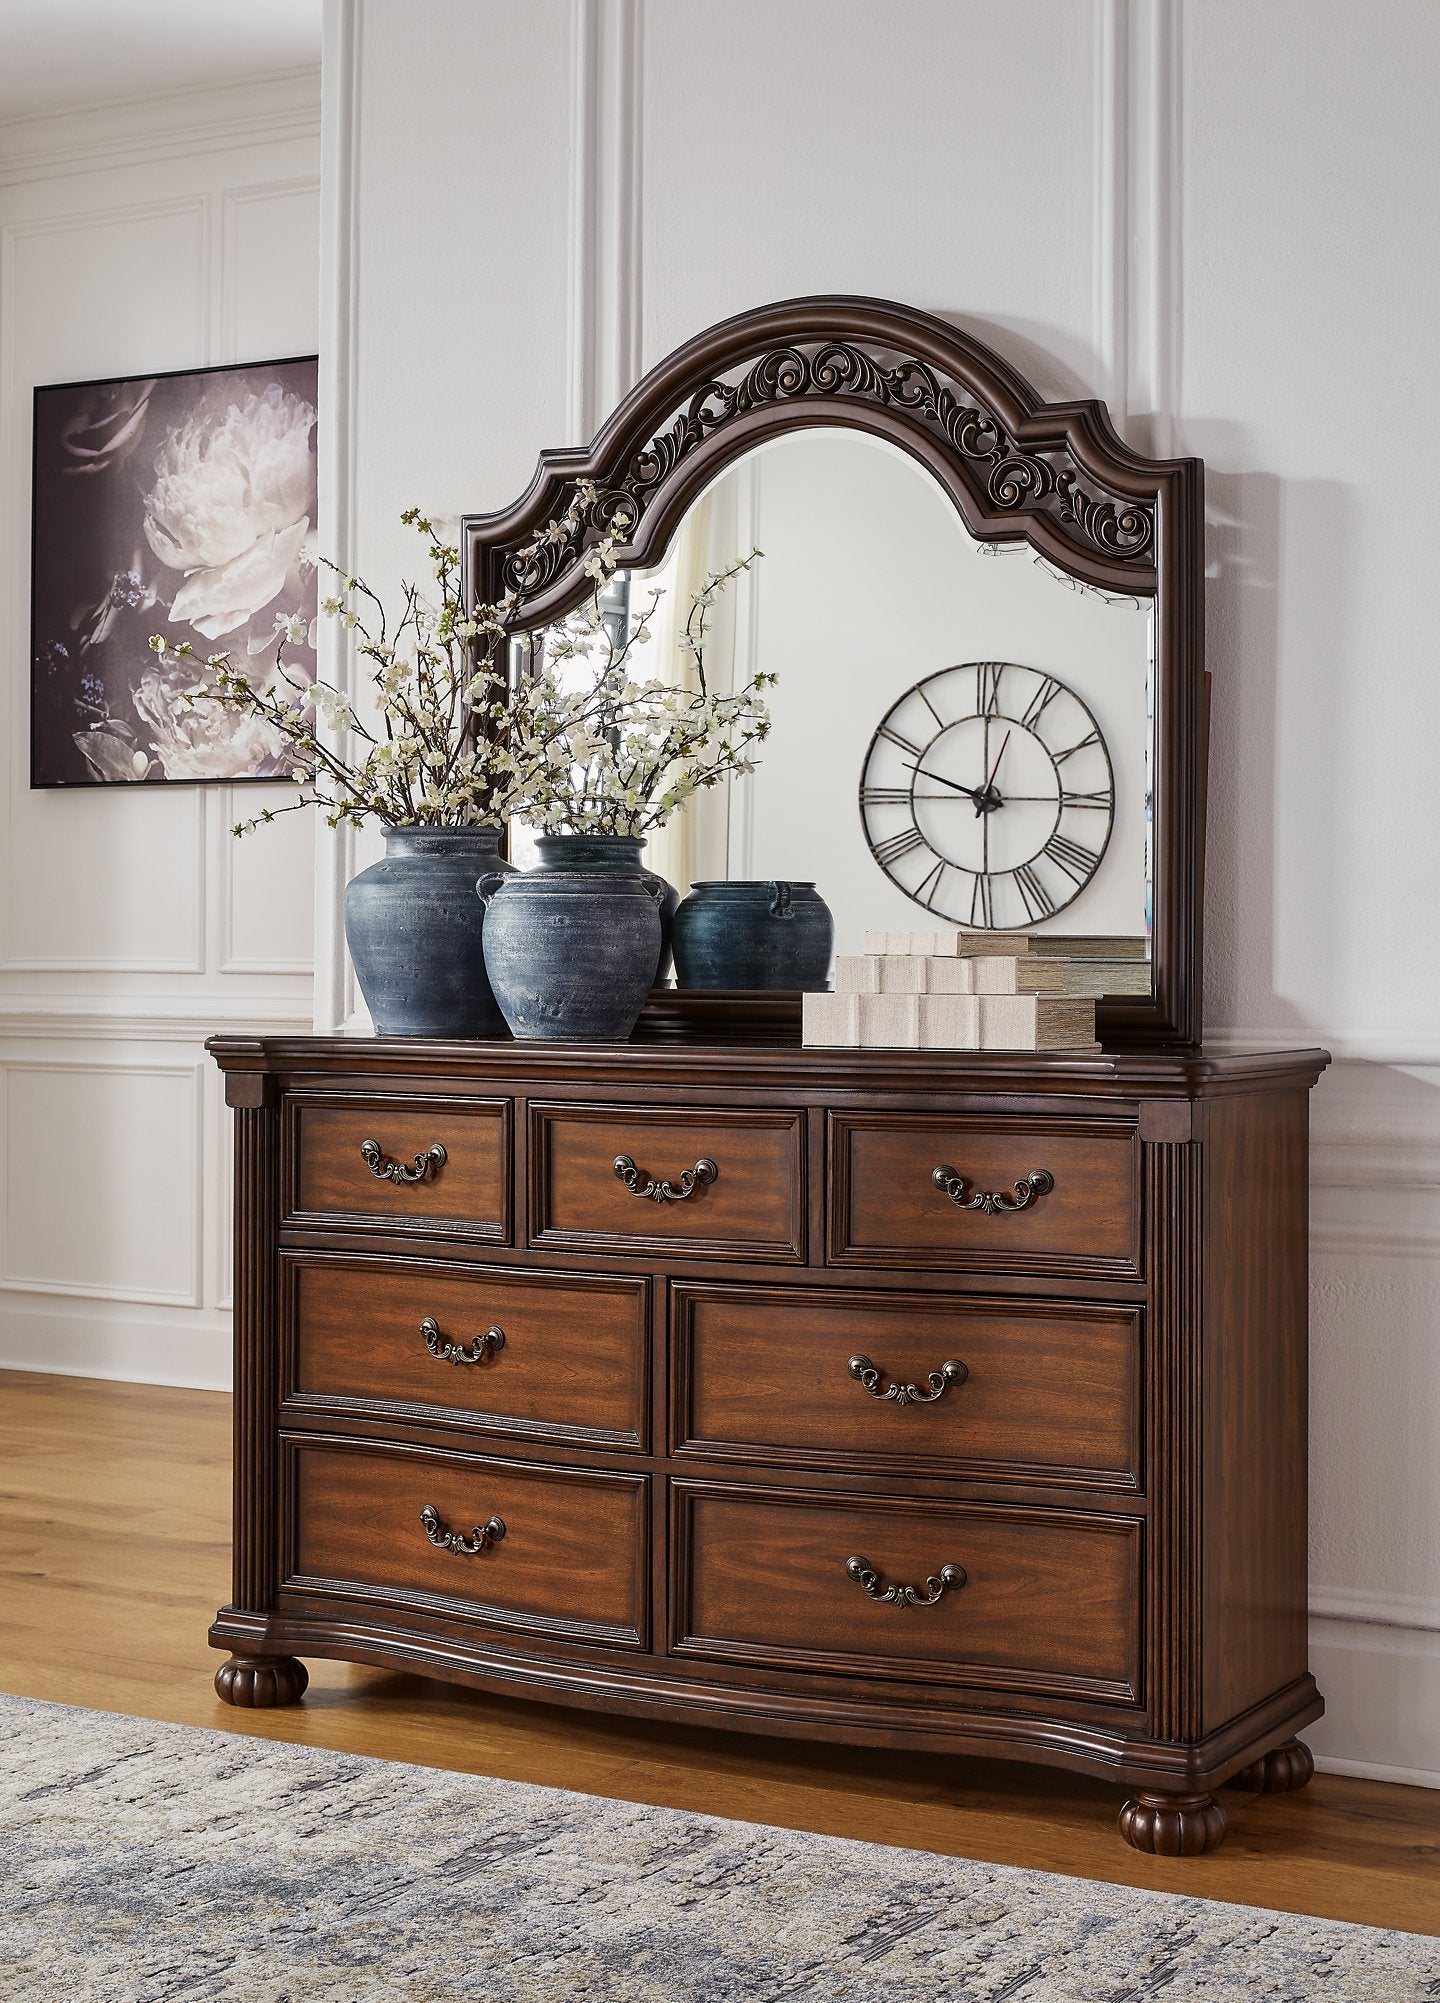 Lavinton Dresser and Mirror - Romeo & Juliet Furniture (Warren,MI)